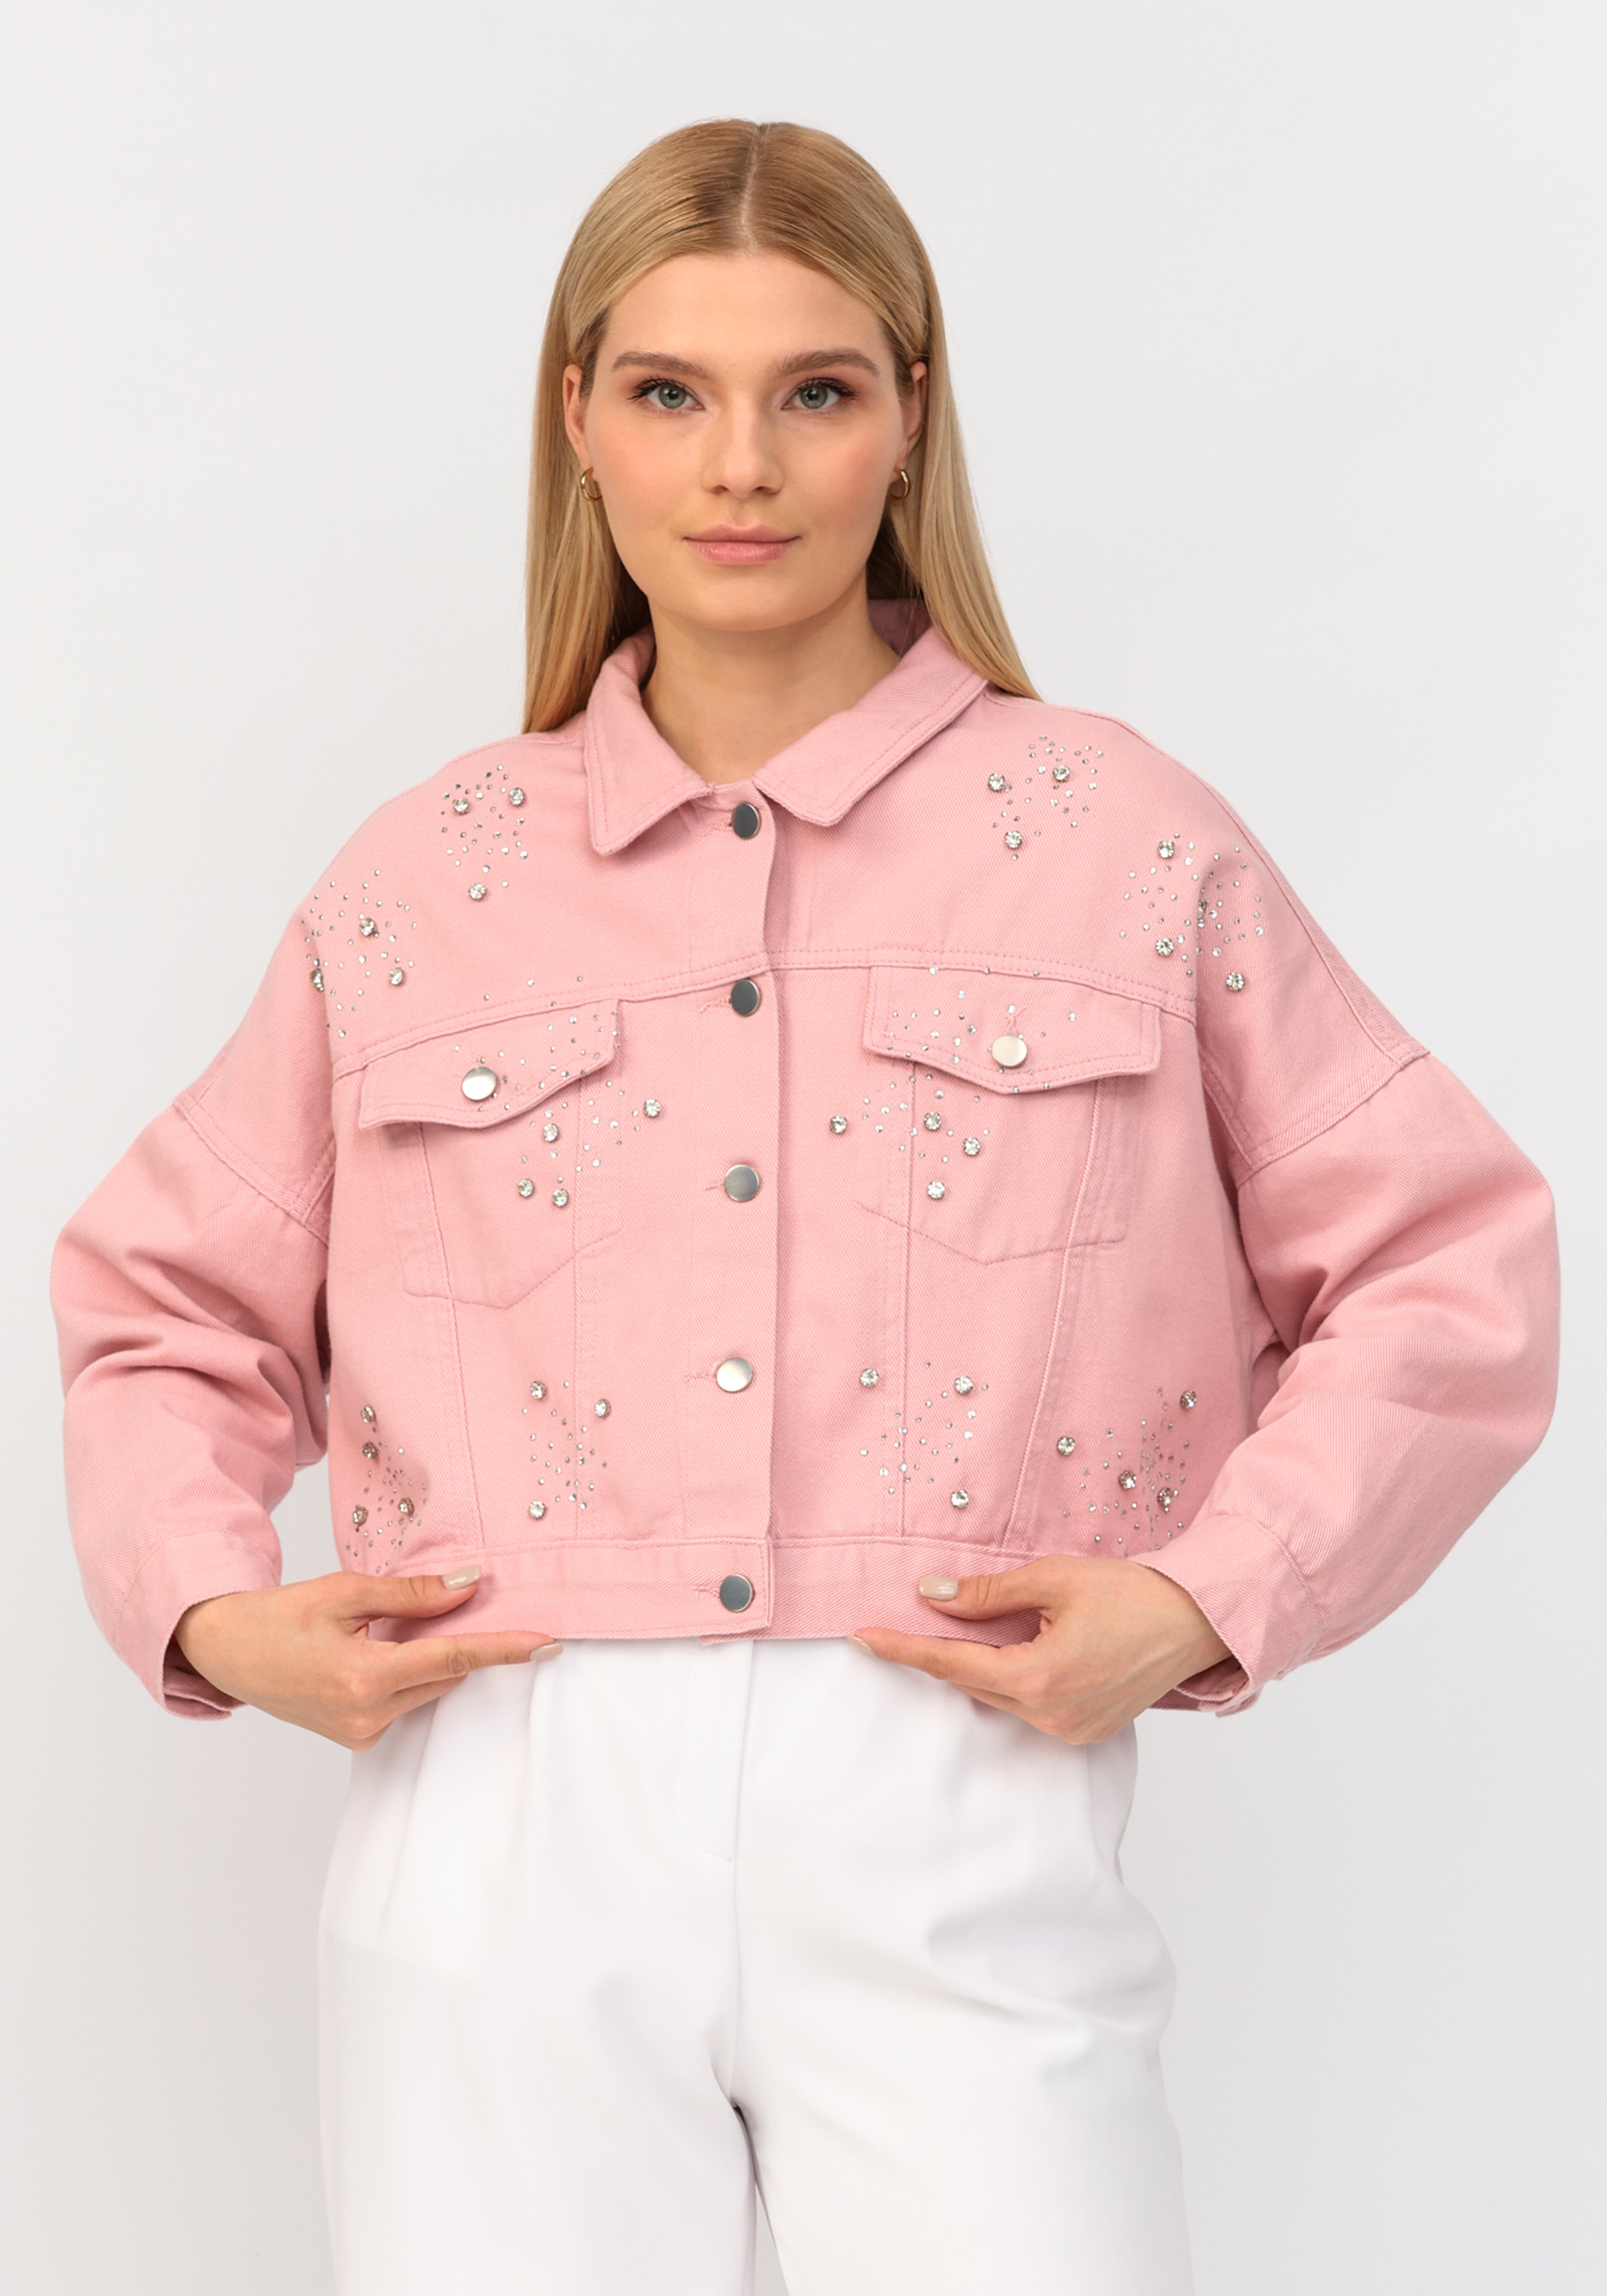 Джинсовая куртка со стразами No name, размер 52-54, цвет розовый - фото 1